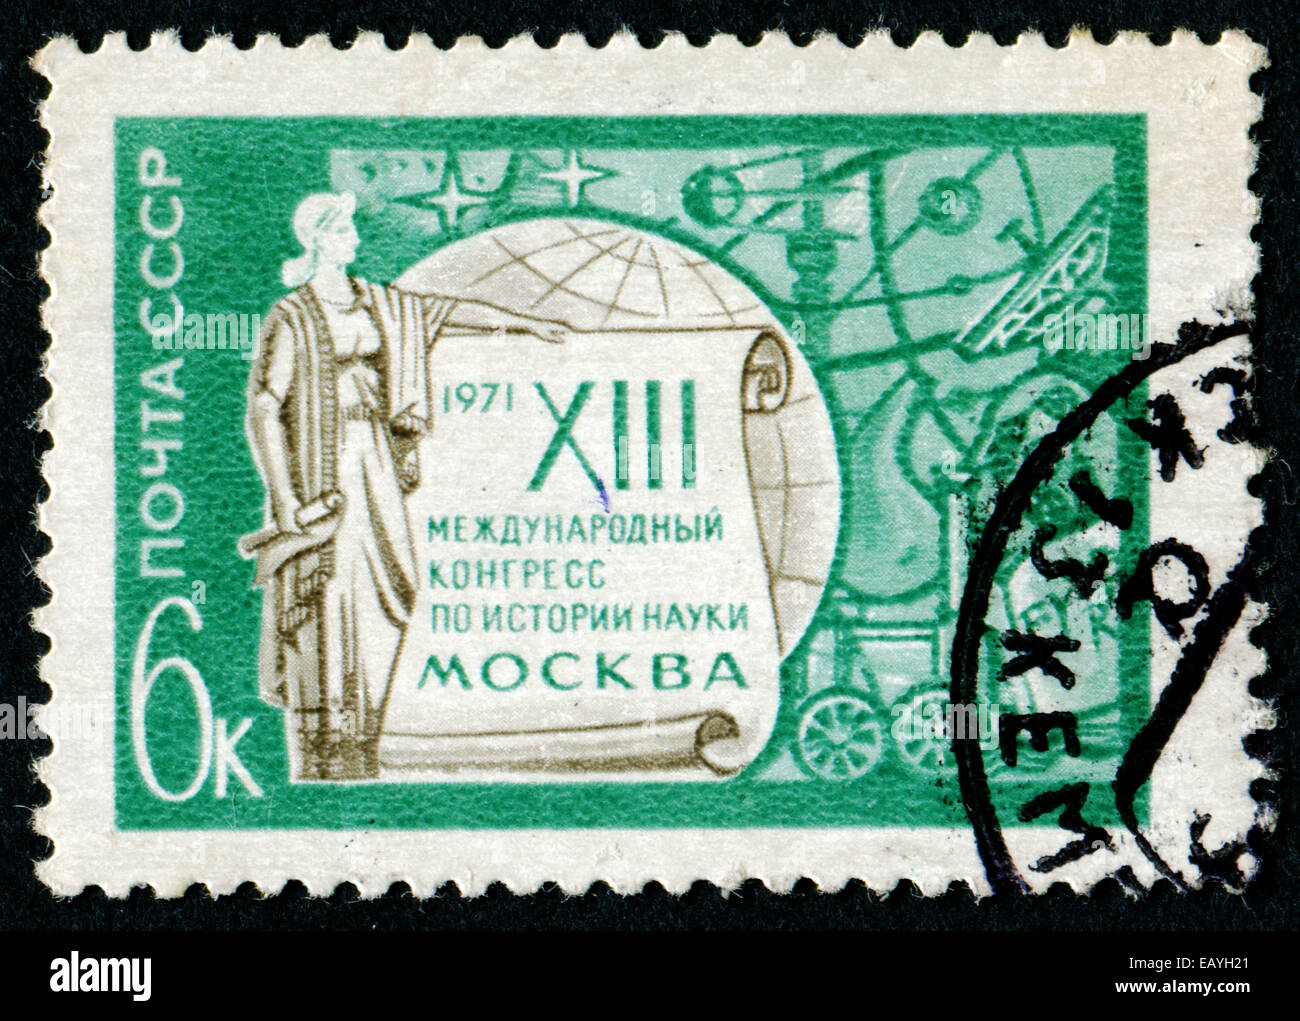 Urss - circa 1971 : timbre imprimé en URSS à partir de l'"International Congrès Moscou ' question commémorative montre Faire défiler (13e sc Banque D'Images